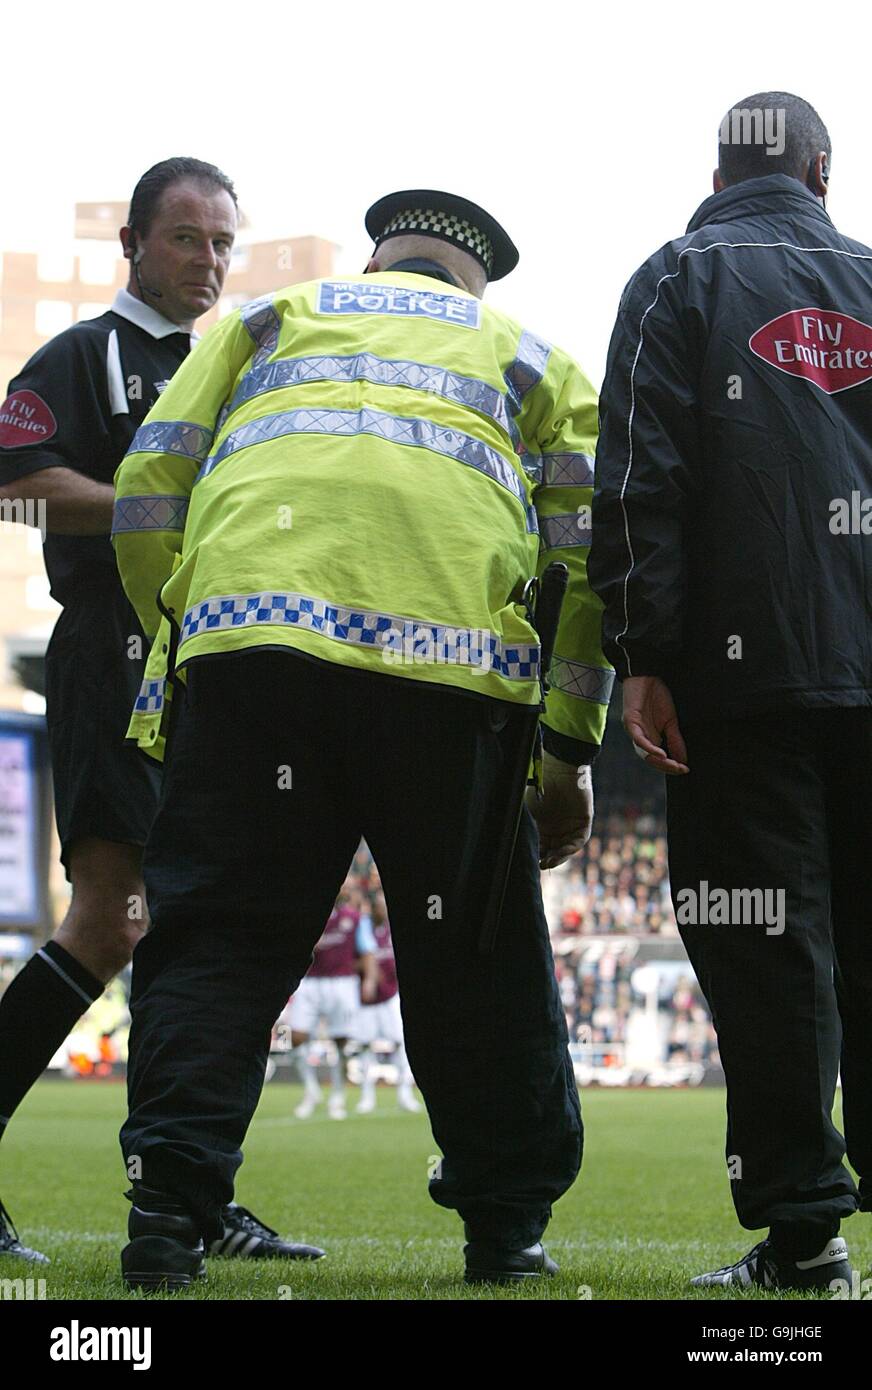 Fußball - FA Barclays Premiership - West Ham United / Arsenal - Upton Park. Ein Polizeibeamter wählt das Objekt, das aus der Menge geworfen wurde, und trifft auf Robin van Persie von Arsenal Stockfoto